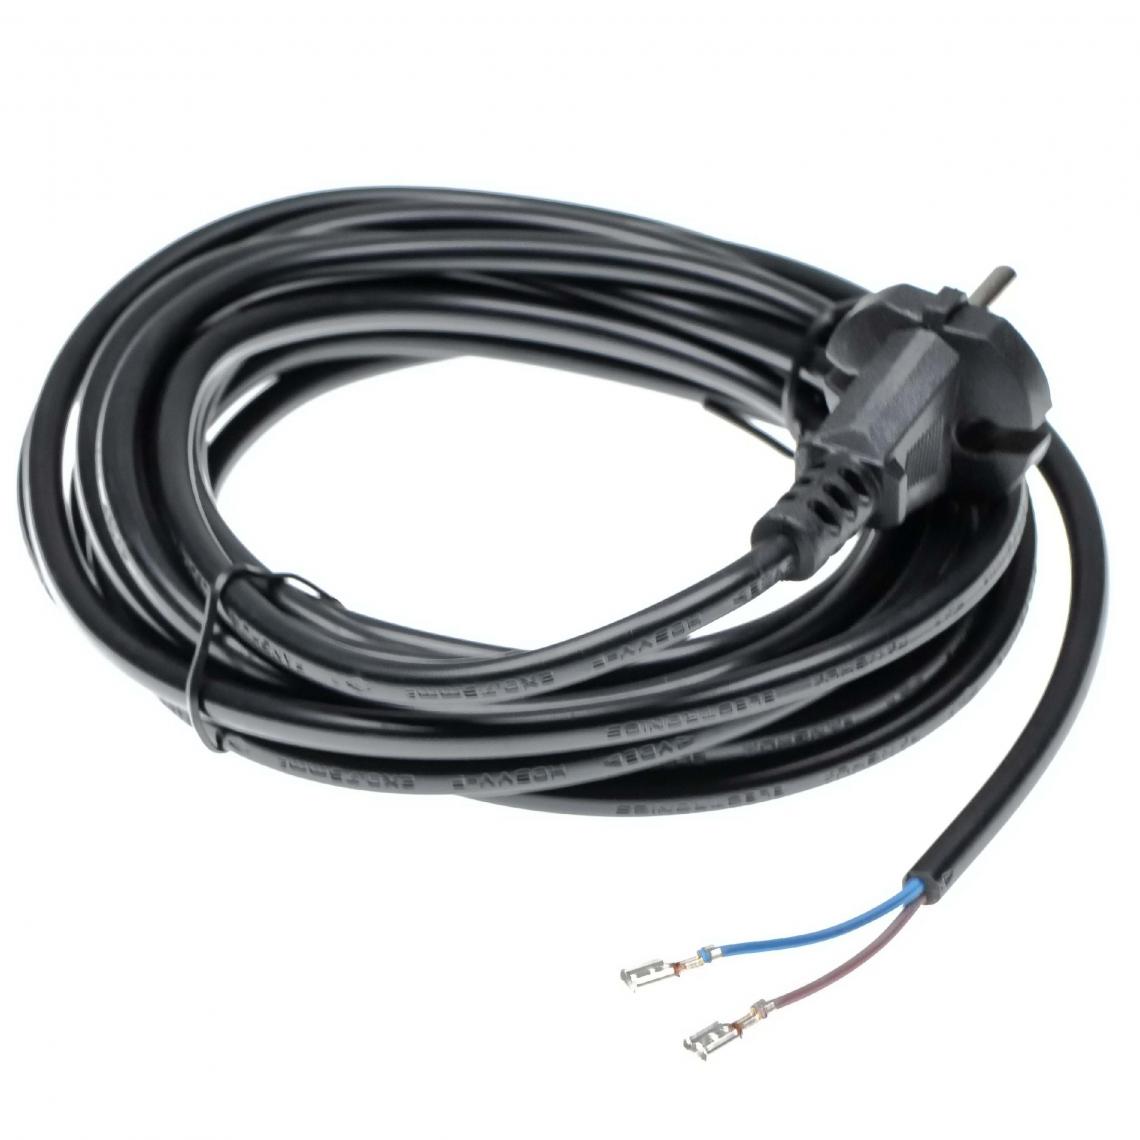 Vhbw - vhbw Câble électrique compatible avec Kärcher A2004, A2014, A2024, A2054, A2201, A2254 aspirateurs - 6 m, 4000 W - Accessoire entretien des sols